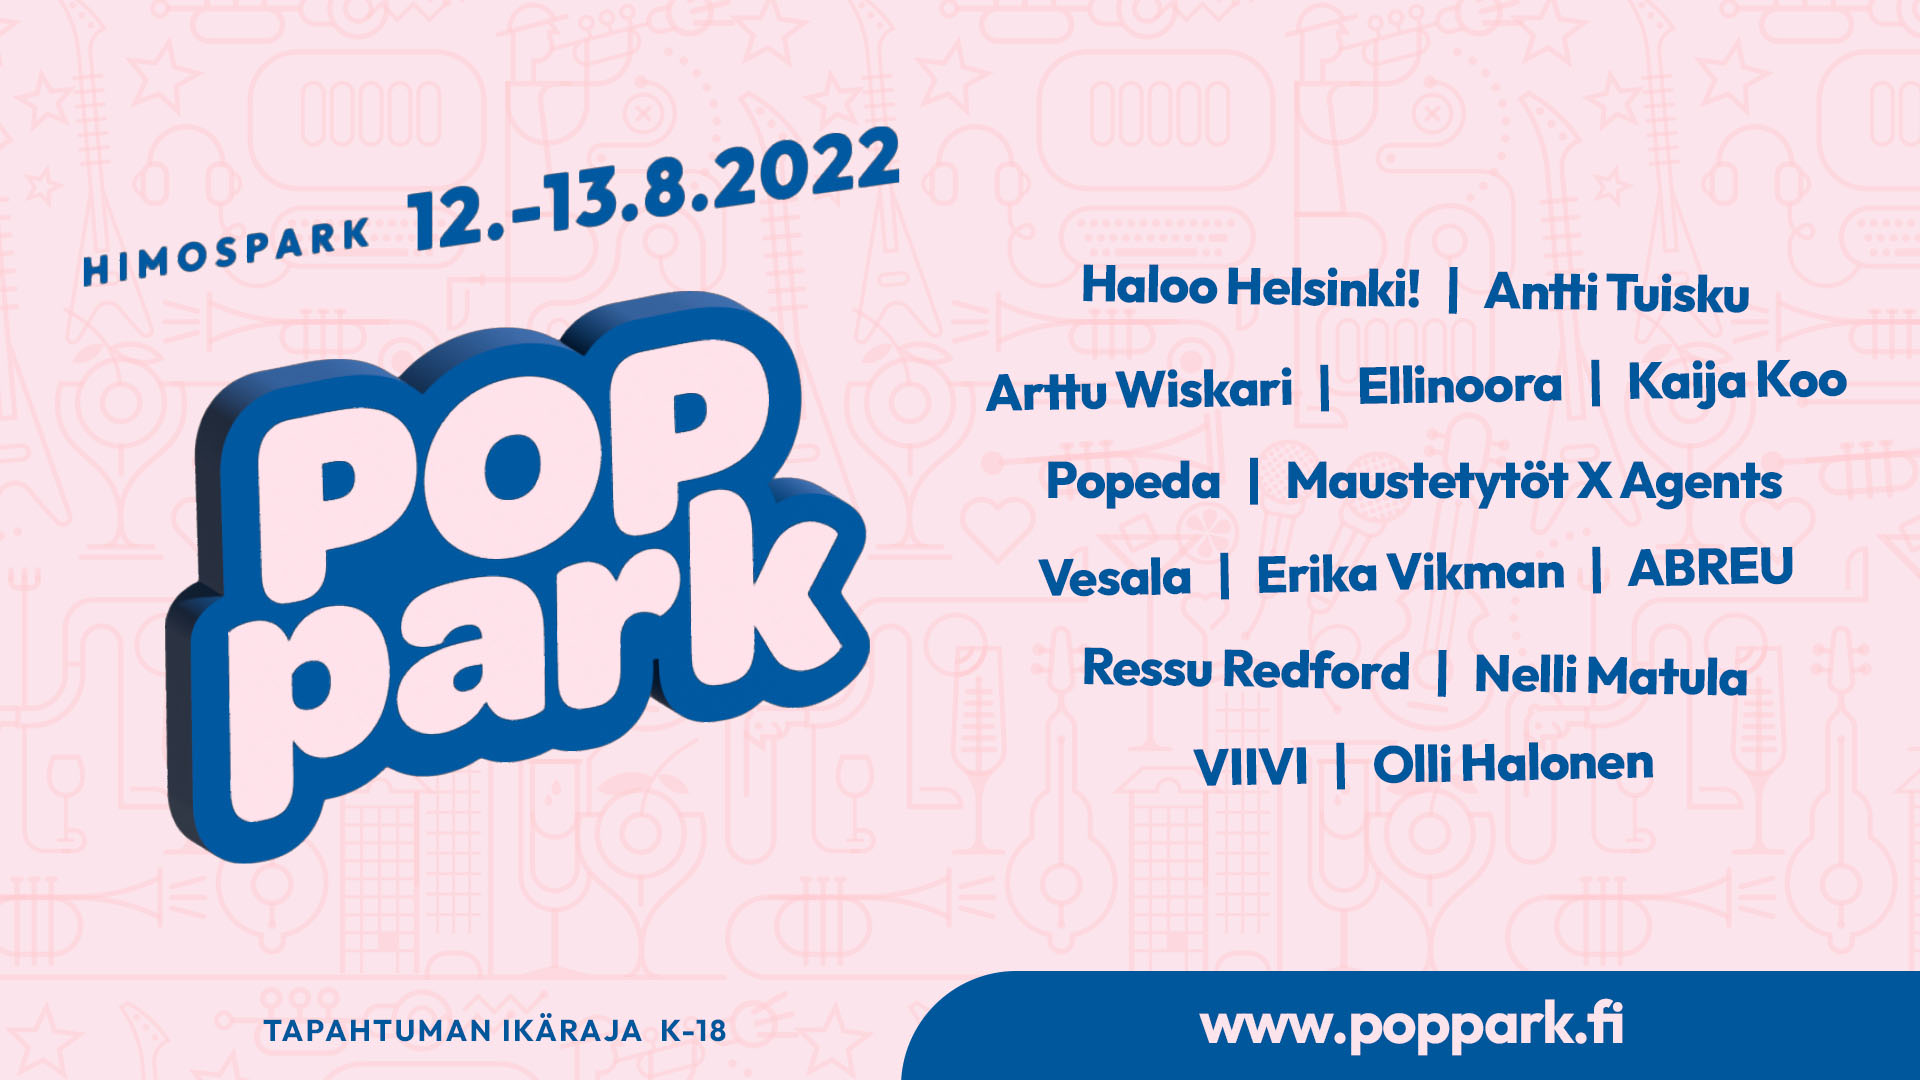 PopPark Himos - HimosLomat